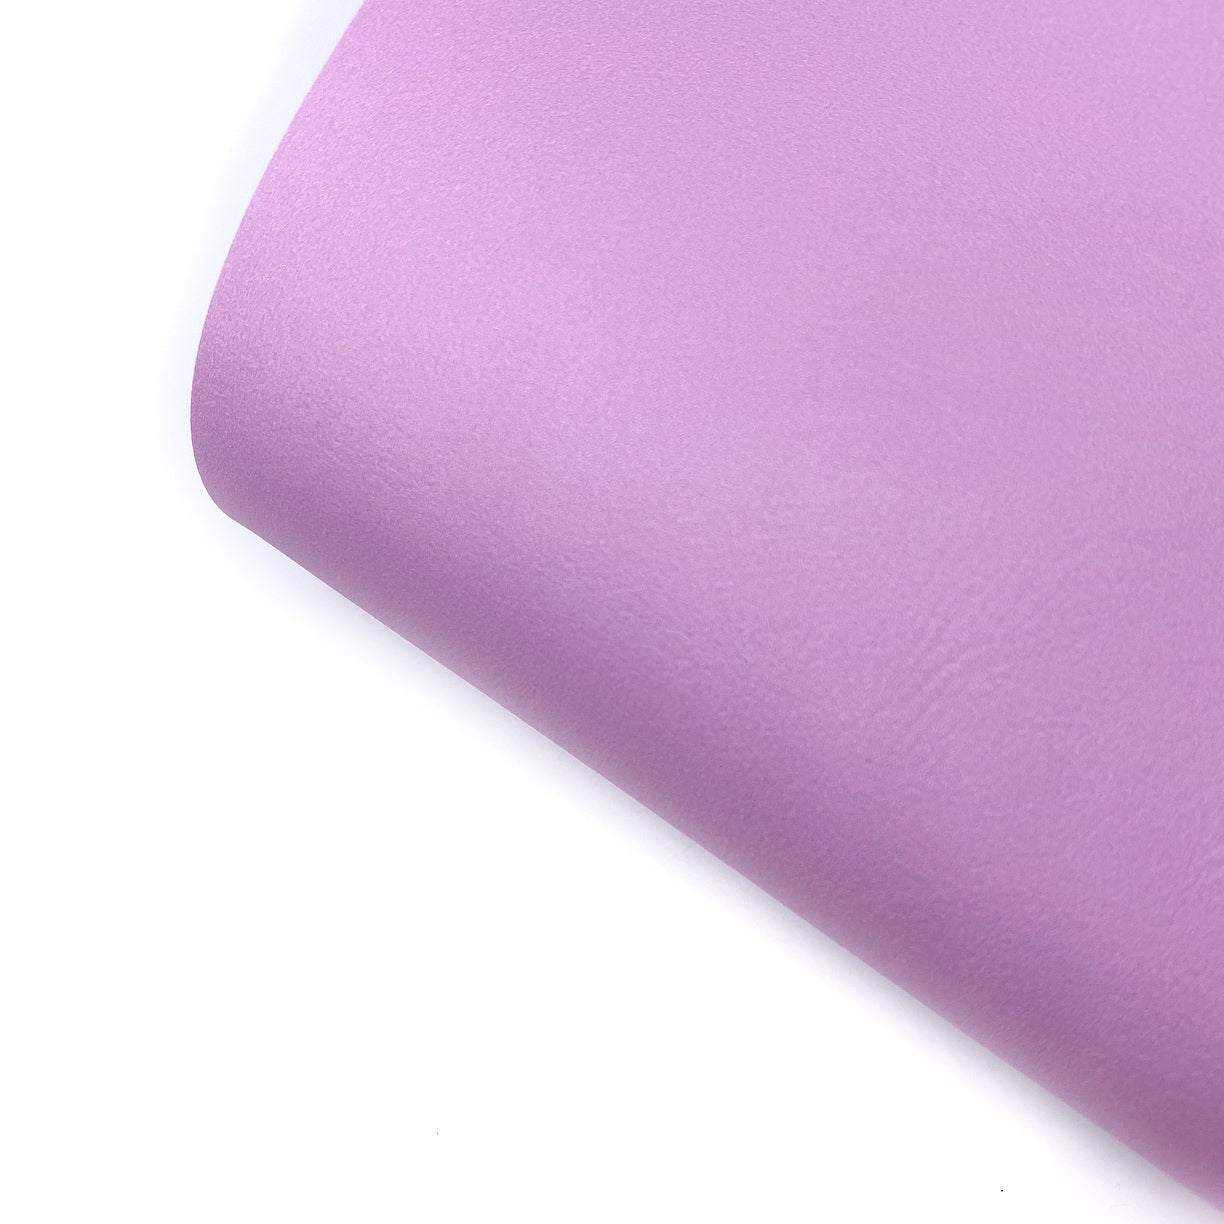 Henri Purple Core Colour Premium Faux Leather Fabric Sheets